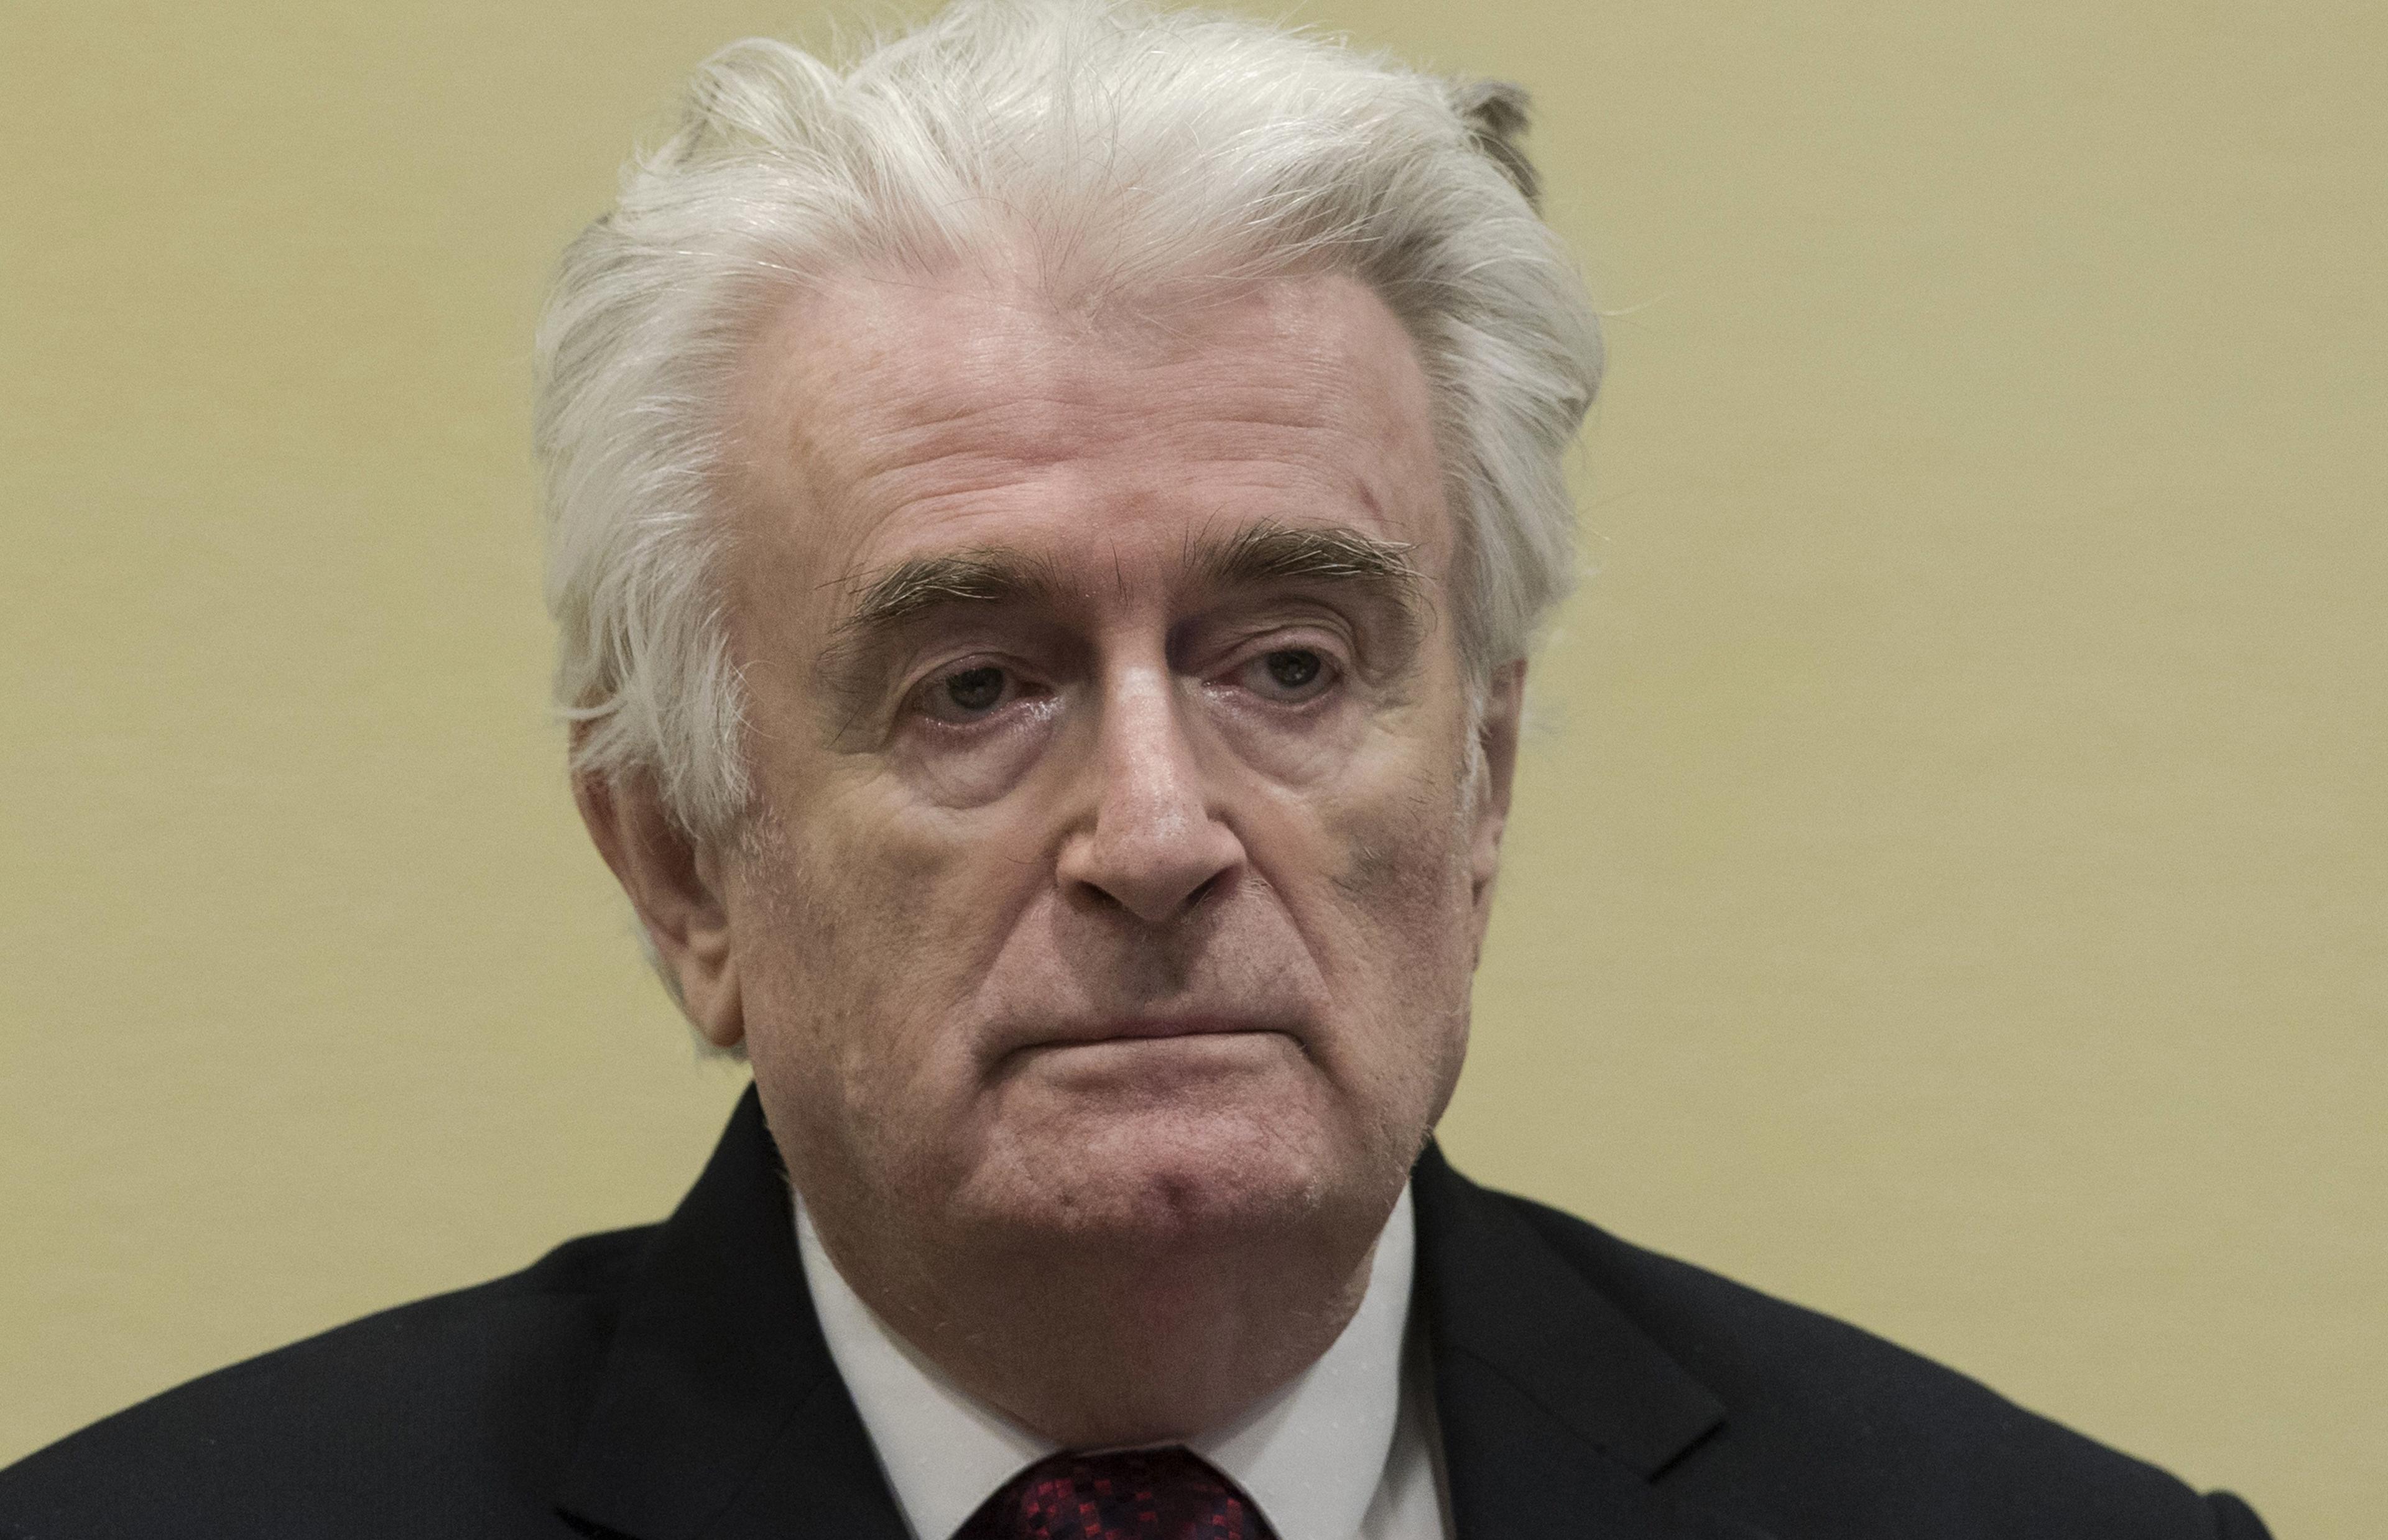 Žalbeno vijeće utvrdilo da je Karadžić znao za ubistva nakon pada Srebrenice